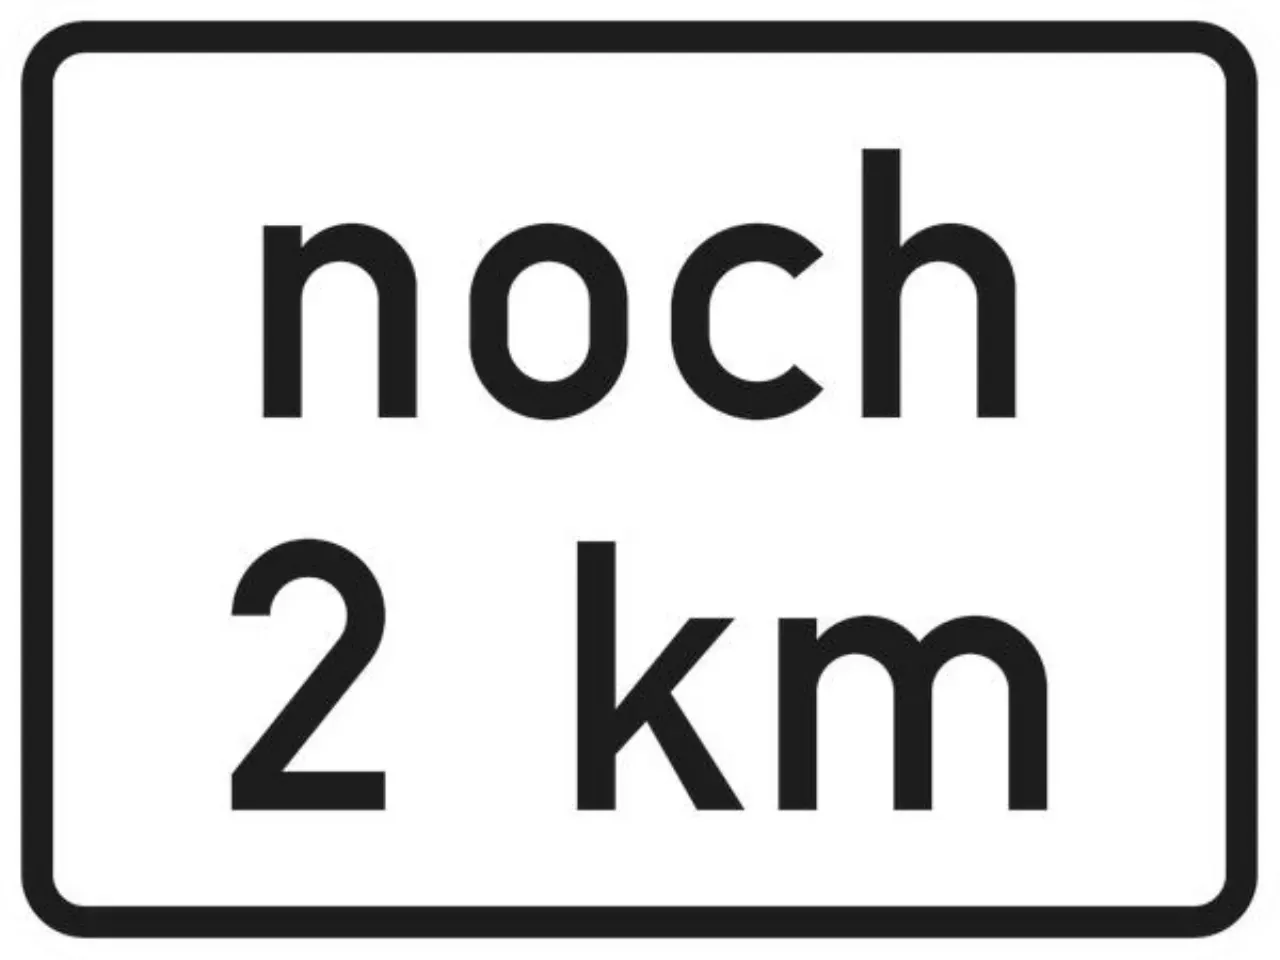 Zusatzzeichen 1000-1099 VZ1001-33 noch ? km gemäß VwV-StVO in Tunneln - 315x420 2 mm RA1 Bild 2 von 4 für Verkehrszeichen